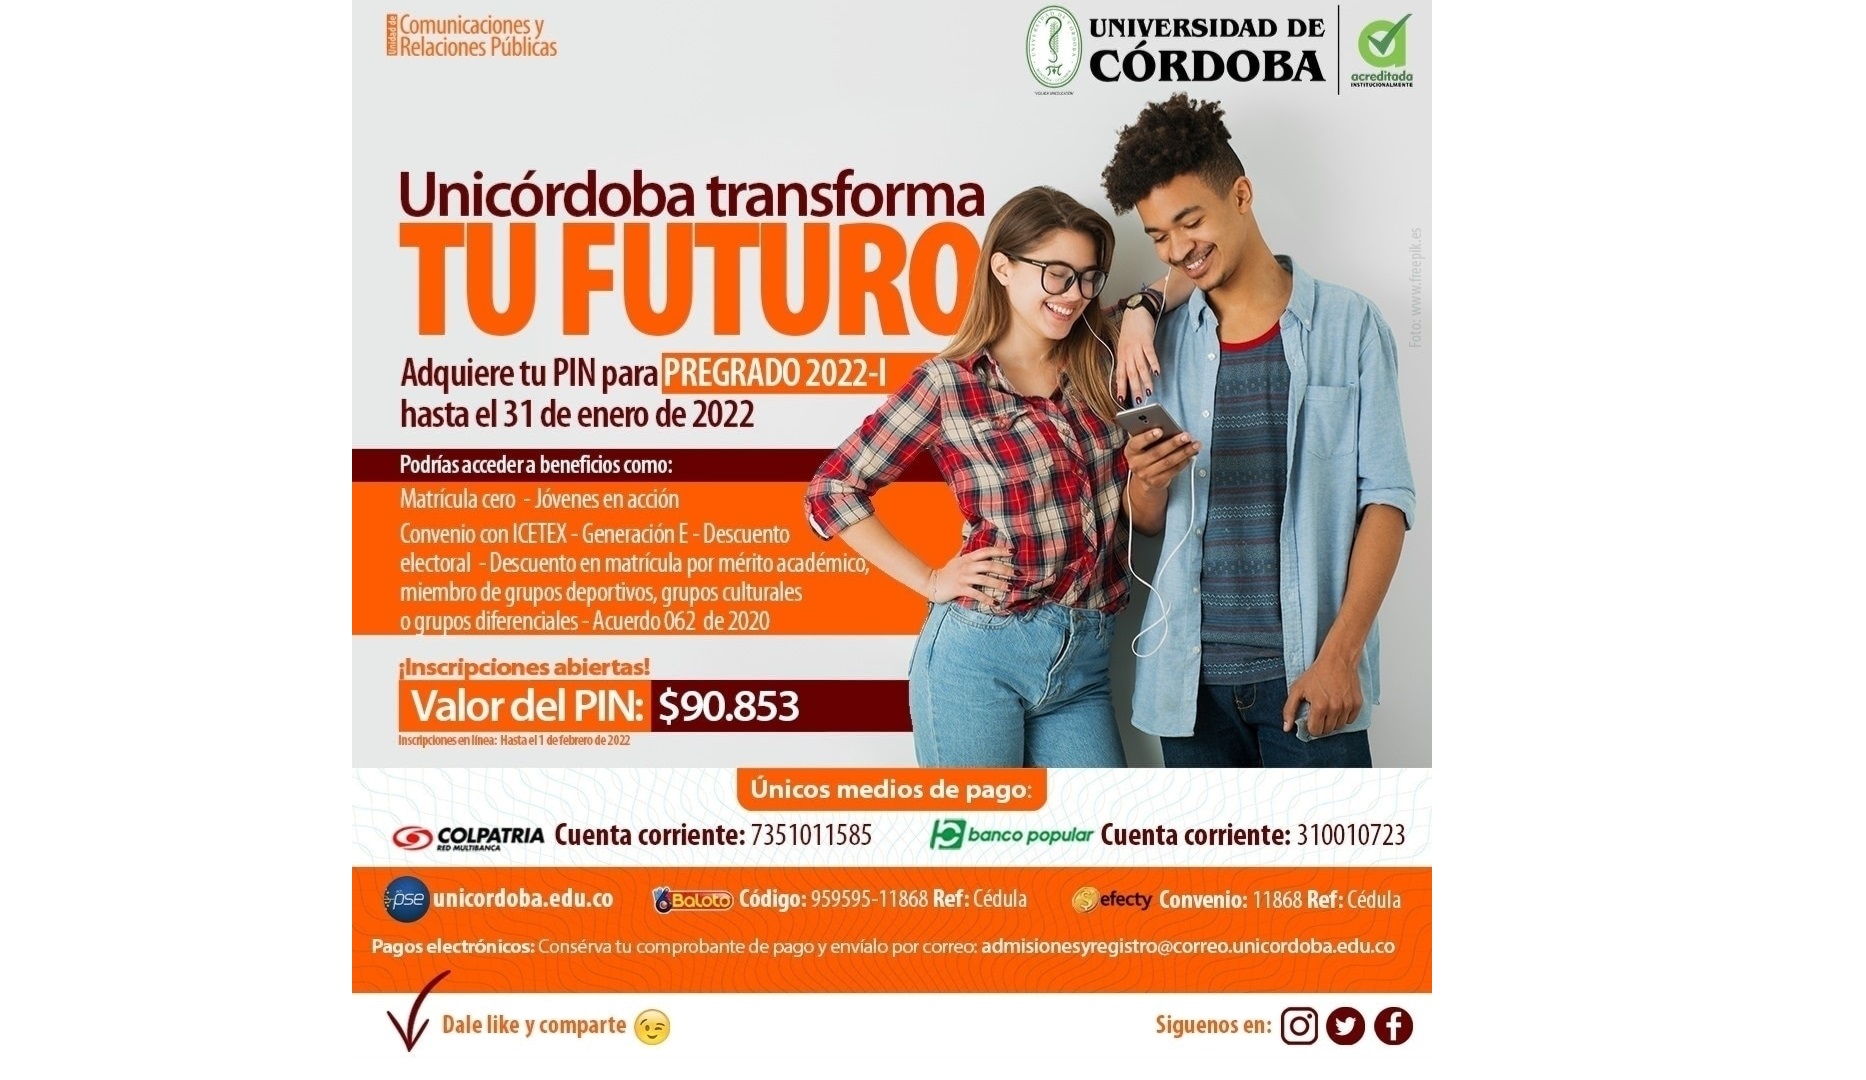 Unicórdoba está preparada para recibir a estudiantes nuevos y antiguos